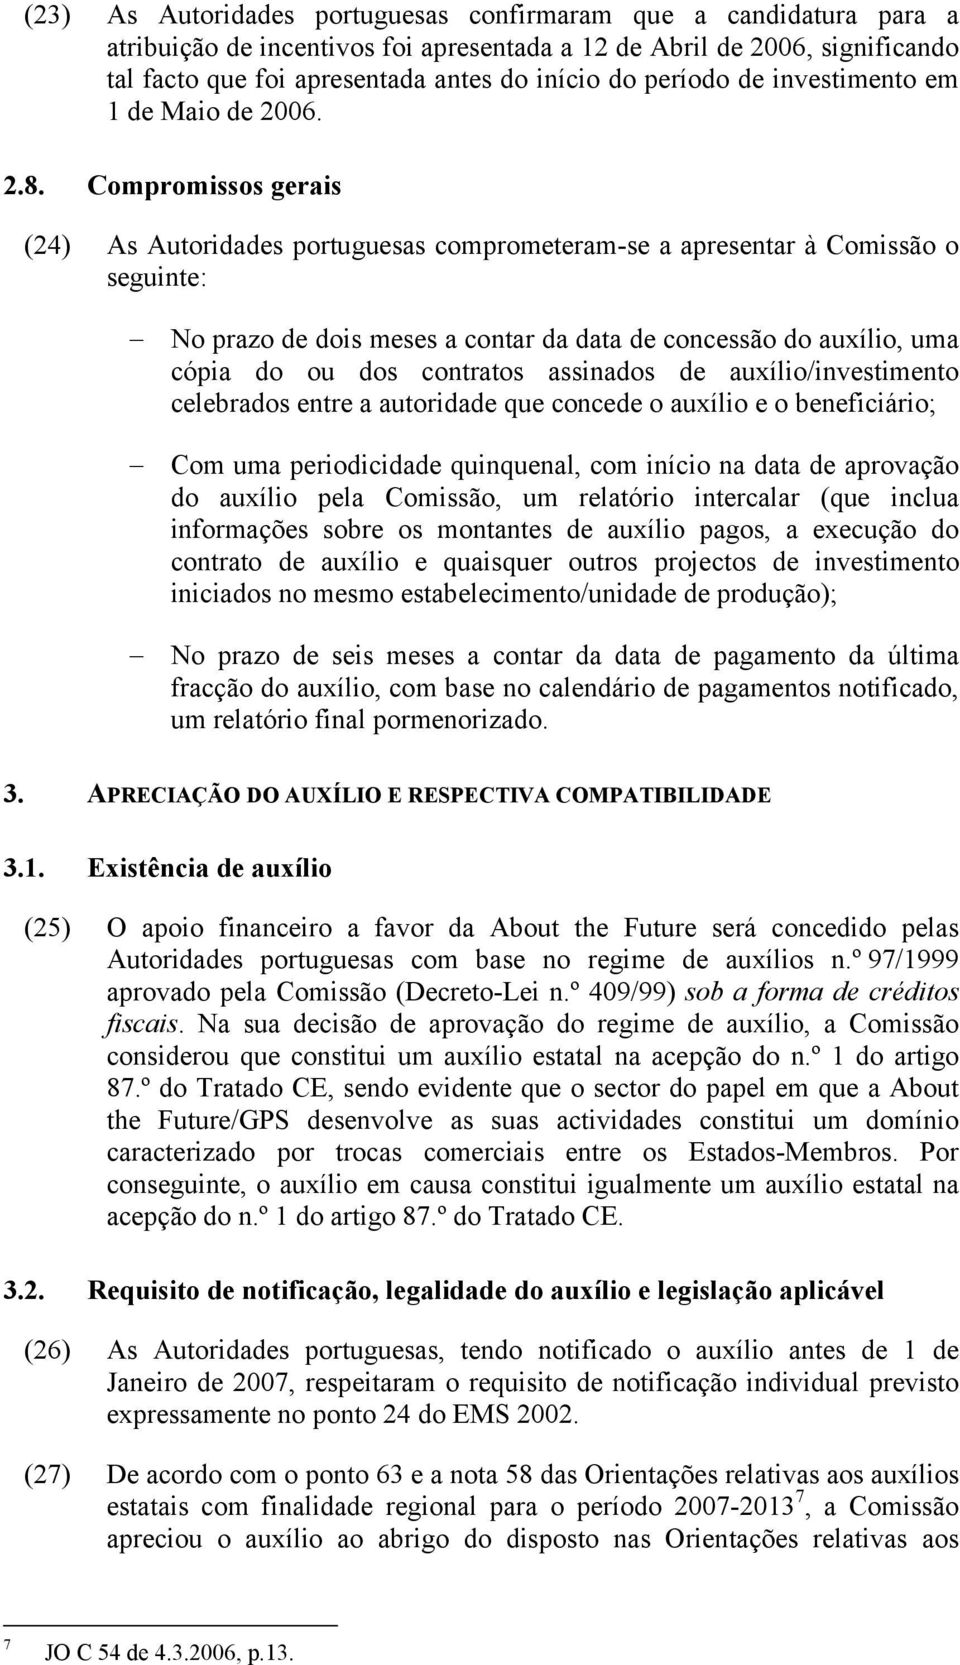 Compromissos gerais (24) As Autoridades portuguesas comprometeram-se a apresentar à Comissão o seguinte: No prazo de dois meses a contar da data de concessão do auxílio, uma cópia do ou dos contratos